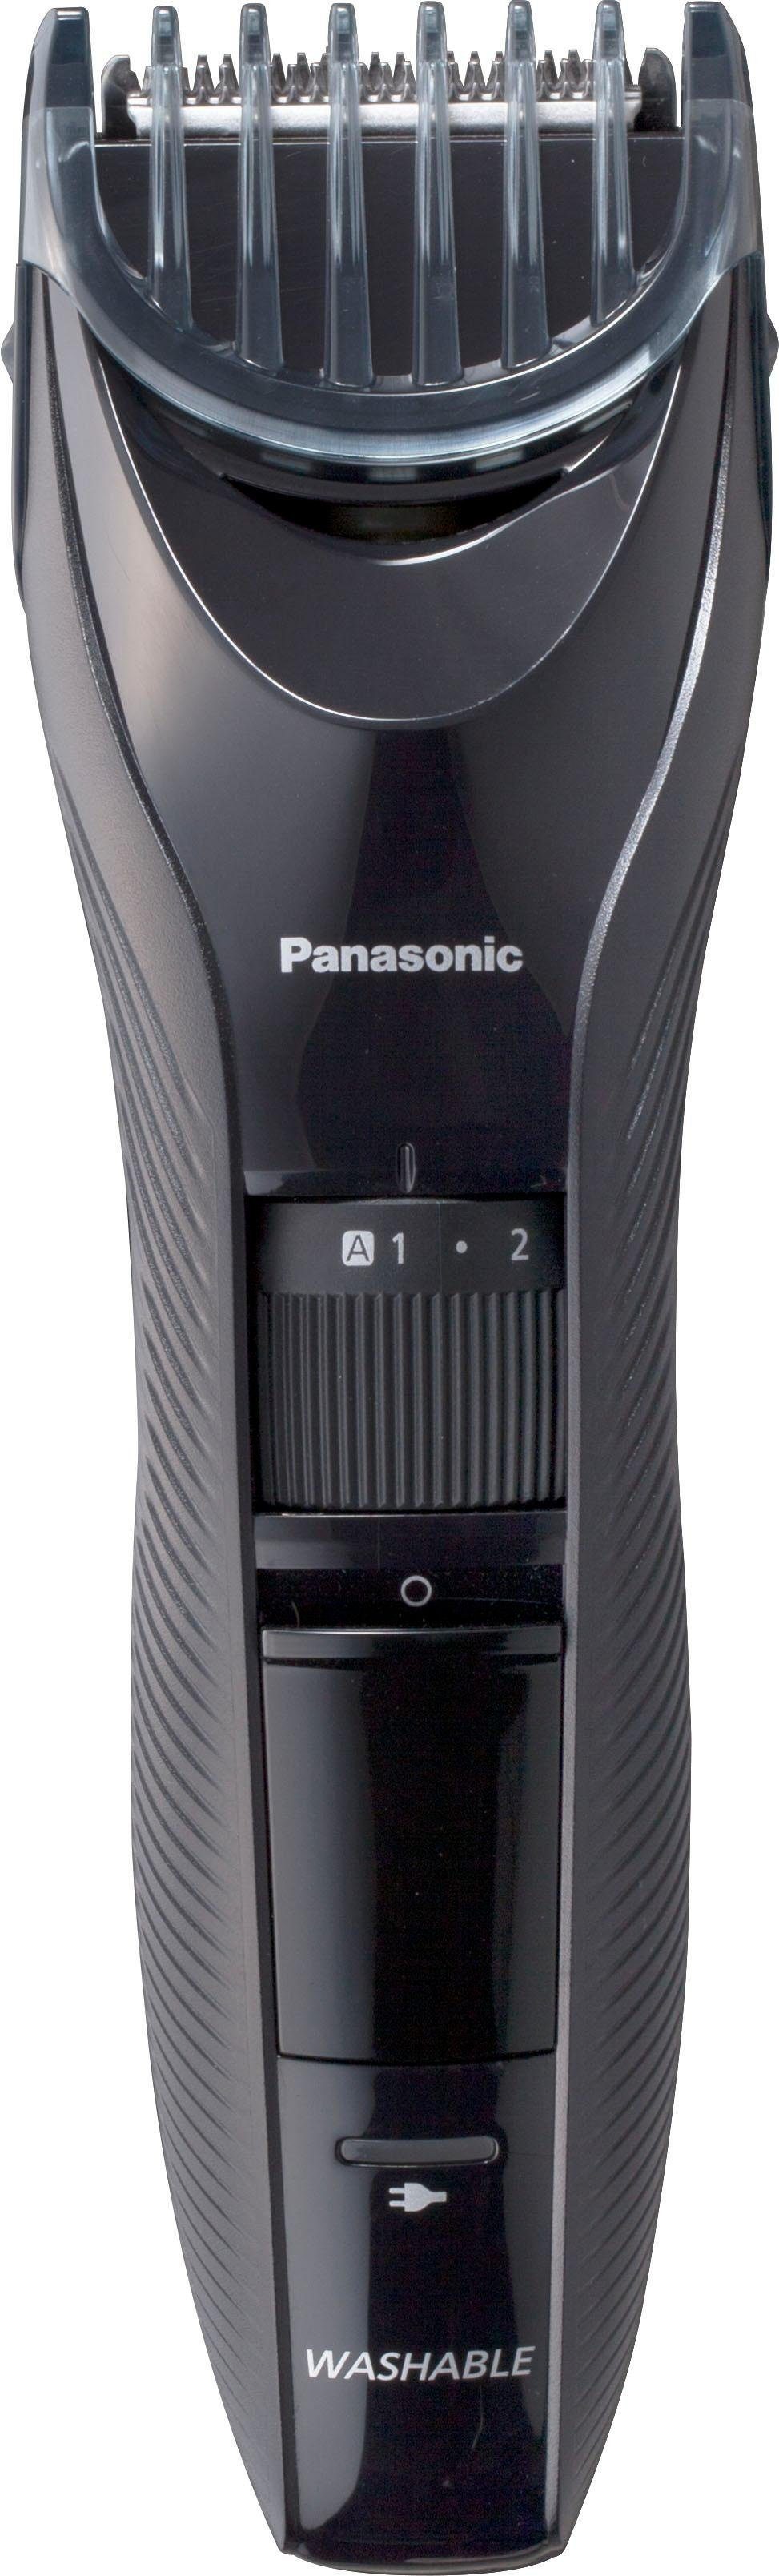 Schnittlängen Haarschneider Panasonic mit ER-GC53-K503, 19